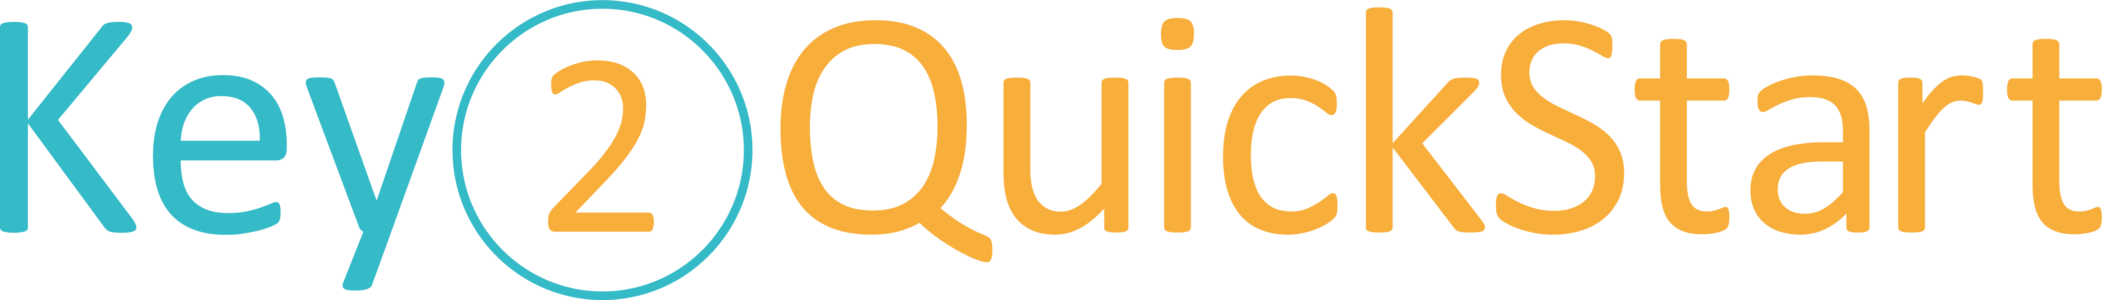 Key2 QuickStart Logo